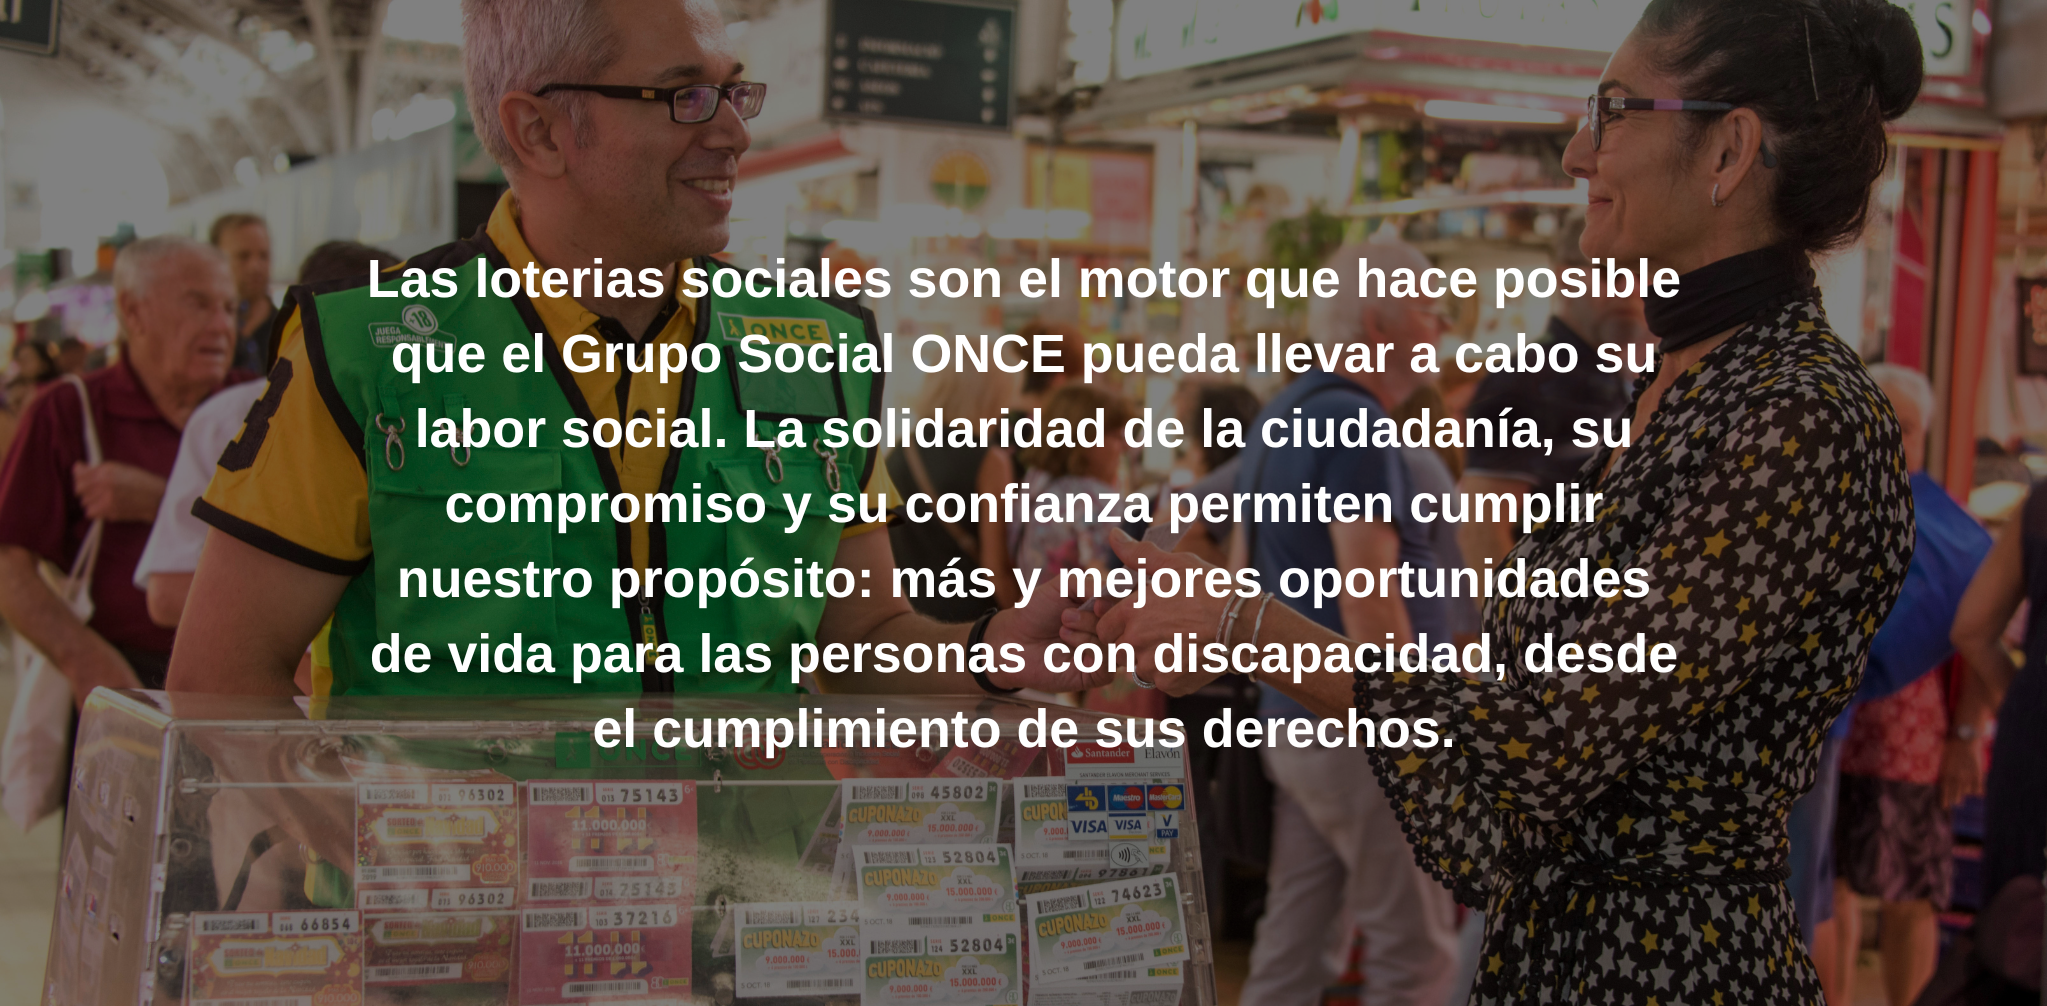 Las loterias sociales son el motor que hace posible que el Grupo Social ONCE pueda llevar a cabo su labor social. La solidaridad de la ciudadanía, su compromiso y su confianza permiten cumplir nuestro propósito: más y mejores oportunidades de vida para las personas con discapacidad, desde el cumplimiento de sus derechos.